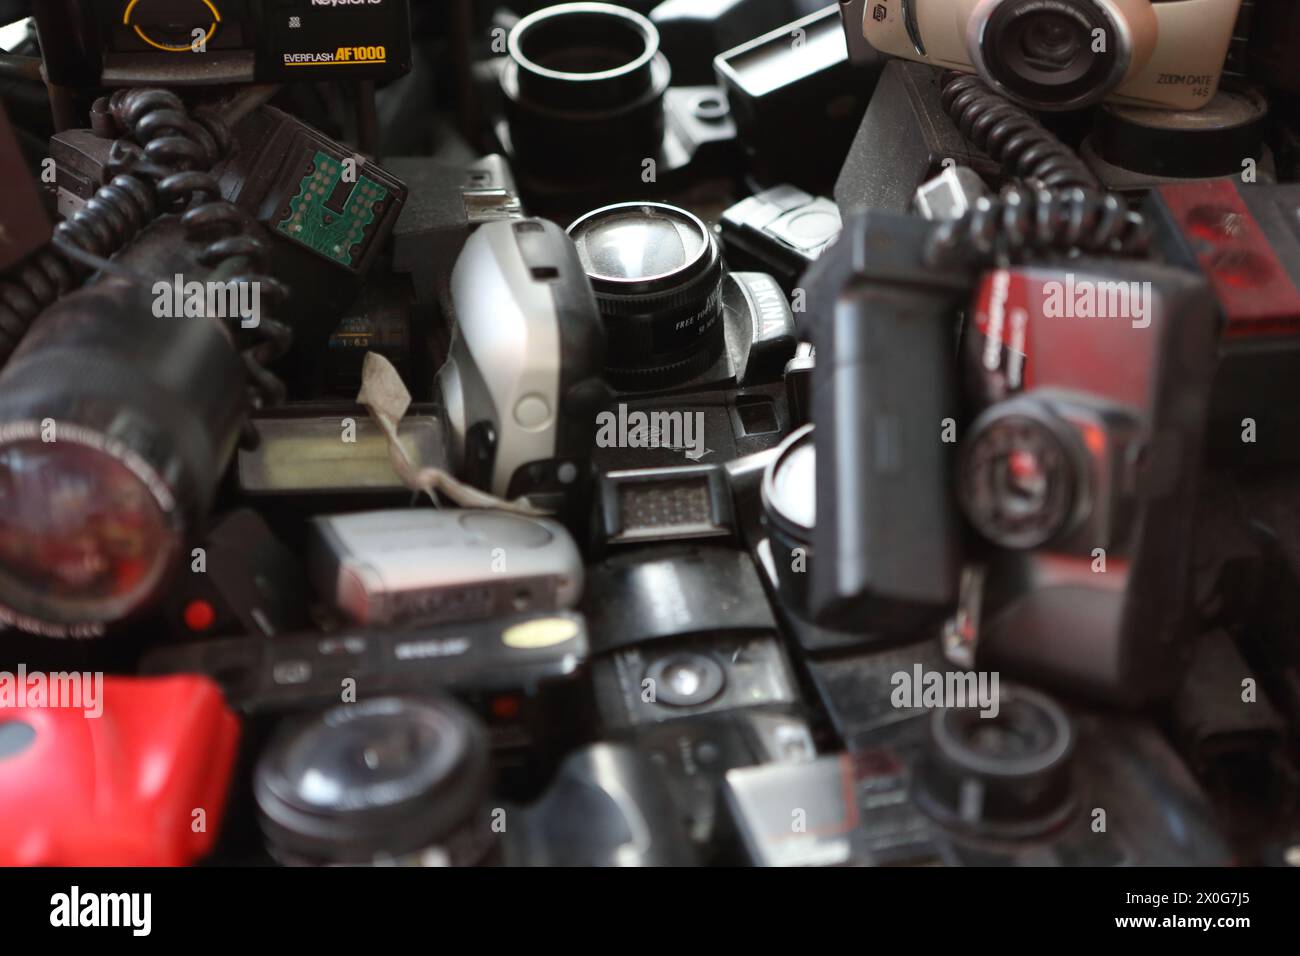 Alte Filmkameras und Objektive, die Elektroschrott oder Elektroschrott zeigen, der normalerweise auf Deponien deponiert wird Stockfoto